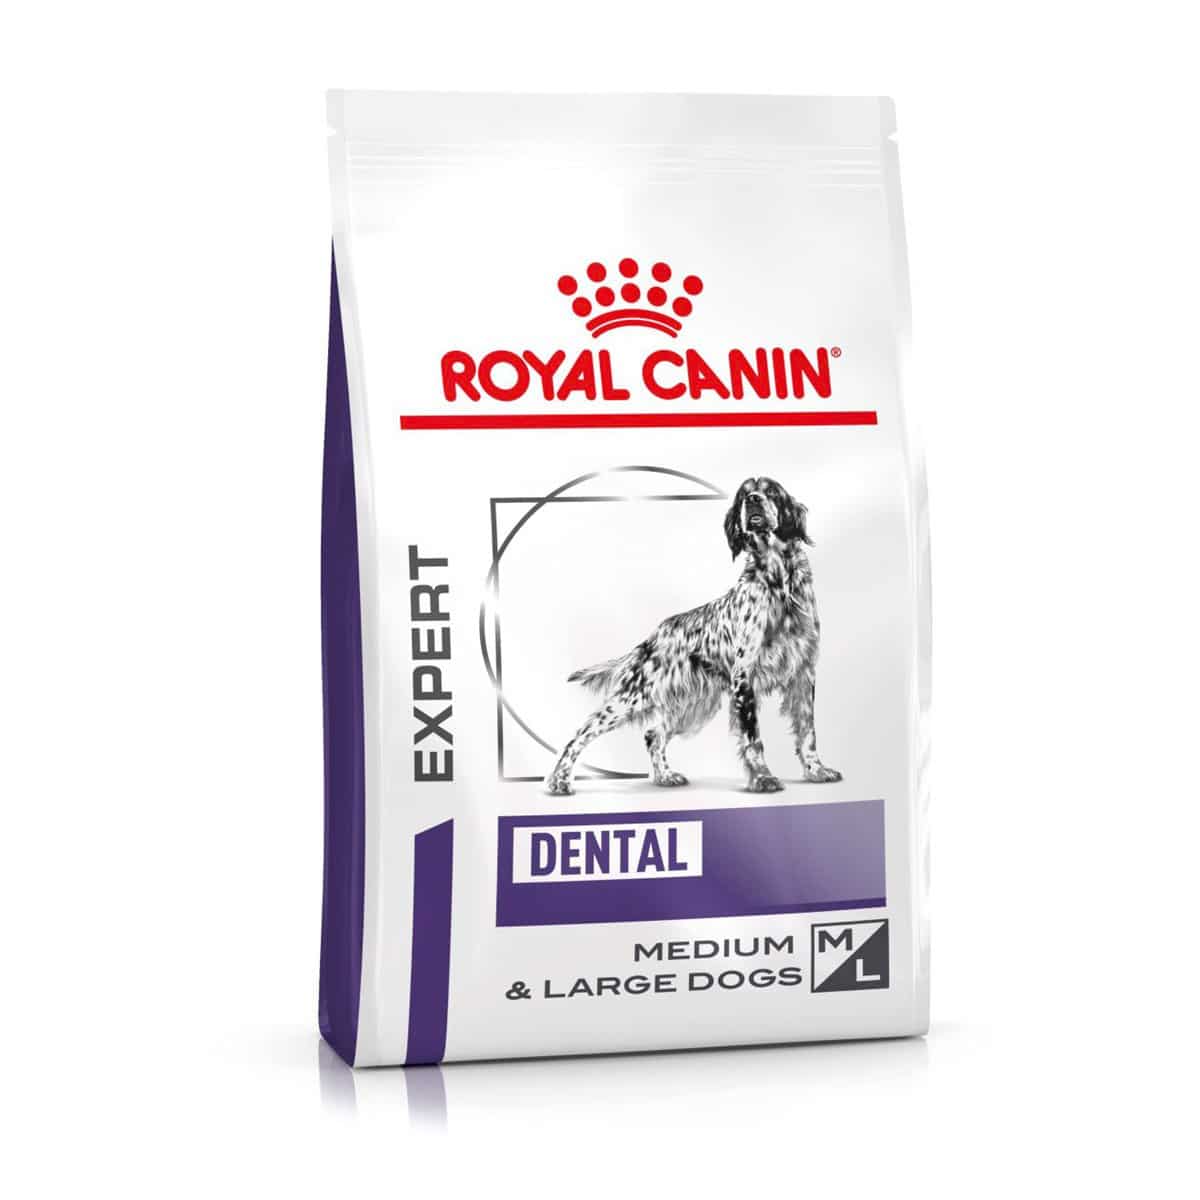 ROYAL CANIN® Expert DENTAL MEDIUM & LARGE DOGS Trockenfutter für Hunde 6kg